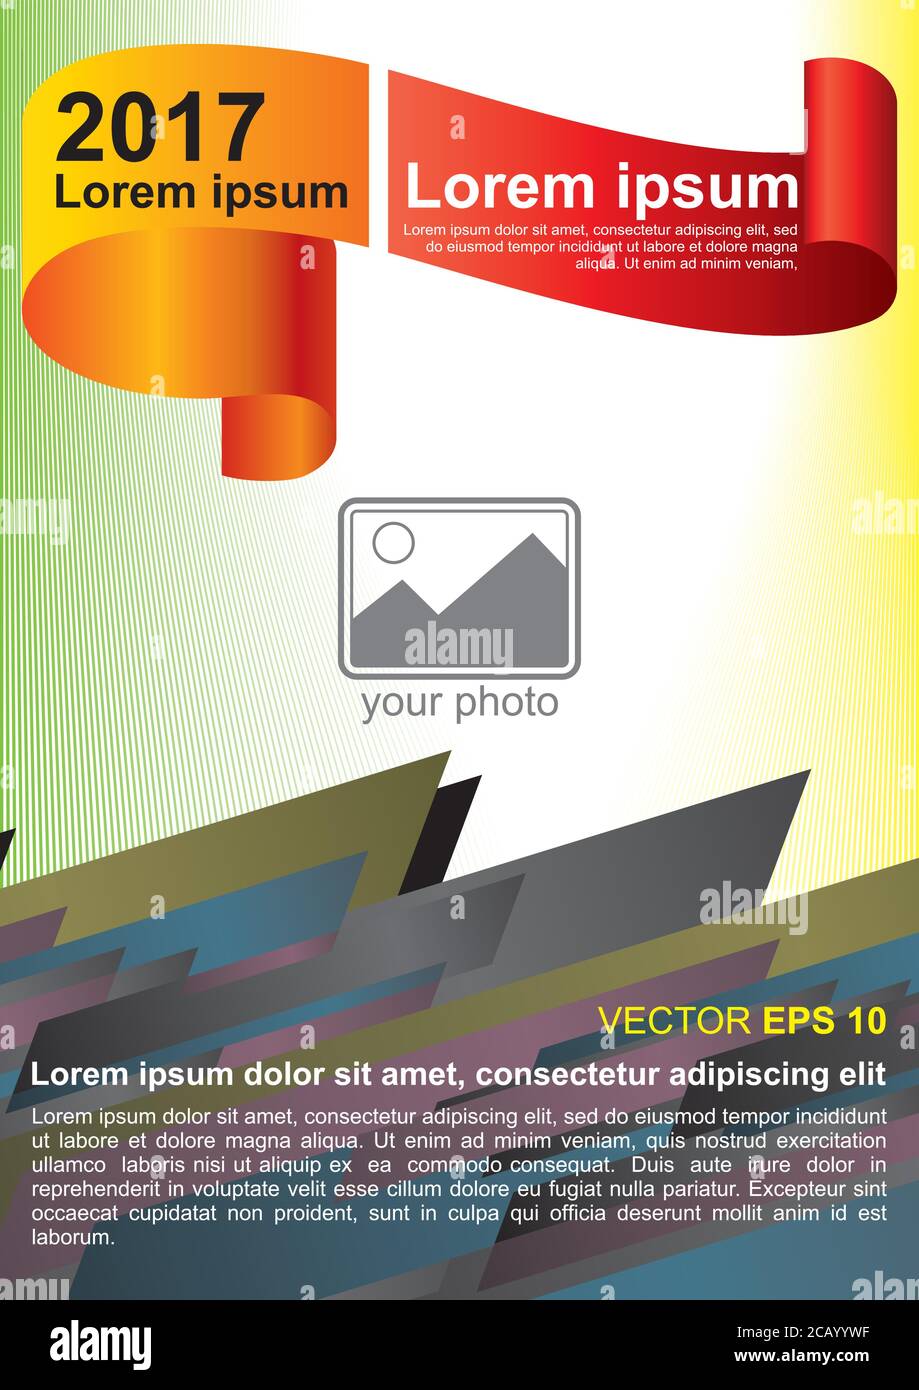 Vorlage für Infografiken mit transparentem Hintergrund, gelbe und rote Flagge, die dunklen Blöcke. Poster, Poster, Covers, Booklet Stock Vektor